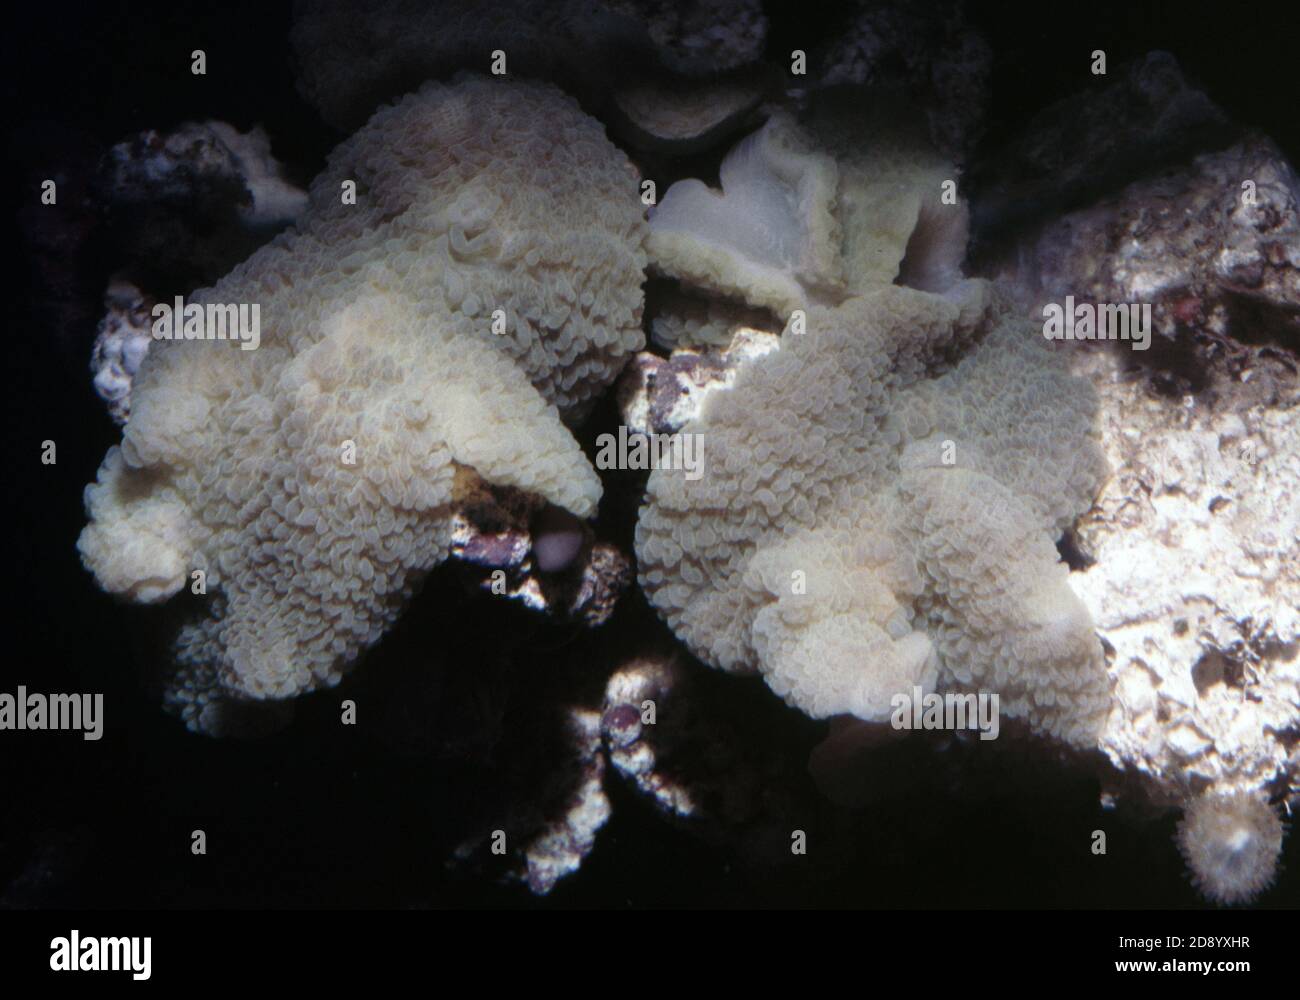 Discosoma es un género de cnidarios del orden Corallimorpharia. Los nombres comunes incluyen la anémona de hongo, la anémona de disco y la seta de oreja de elefante Foto de stock